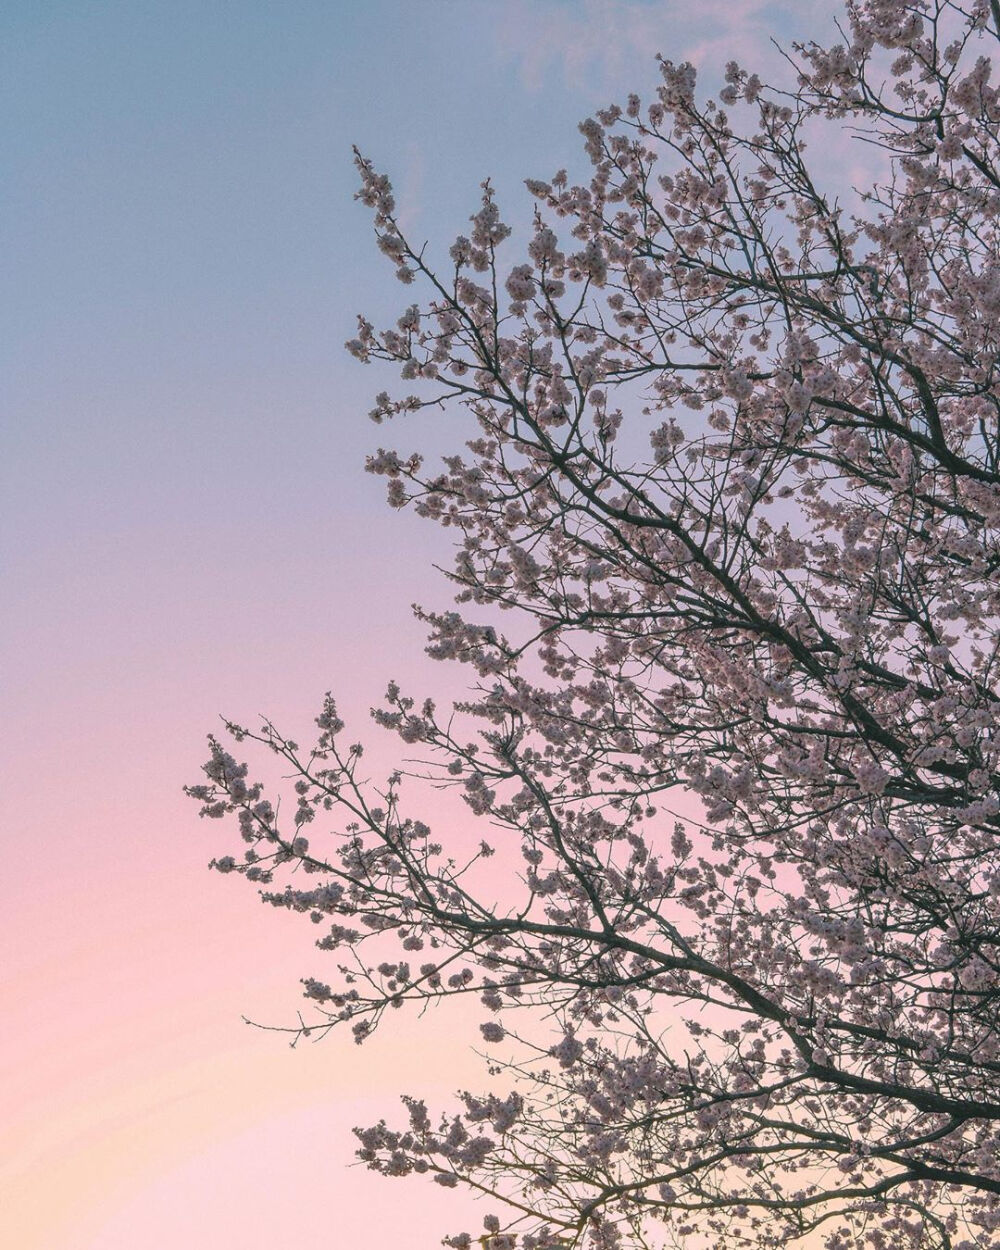 春天有樱花味的天空
以及一勺浓郁的風♡